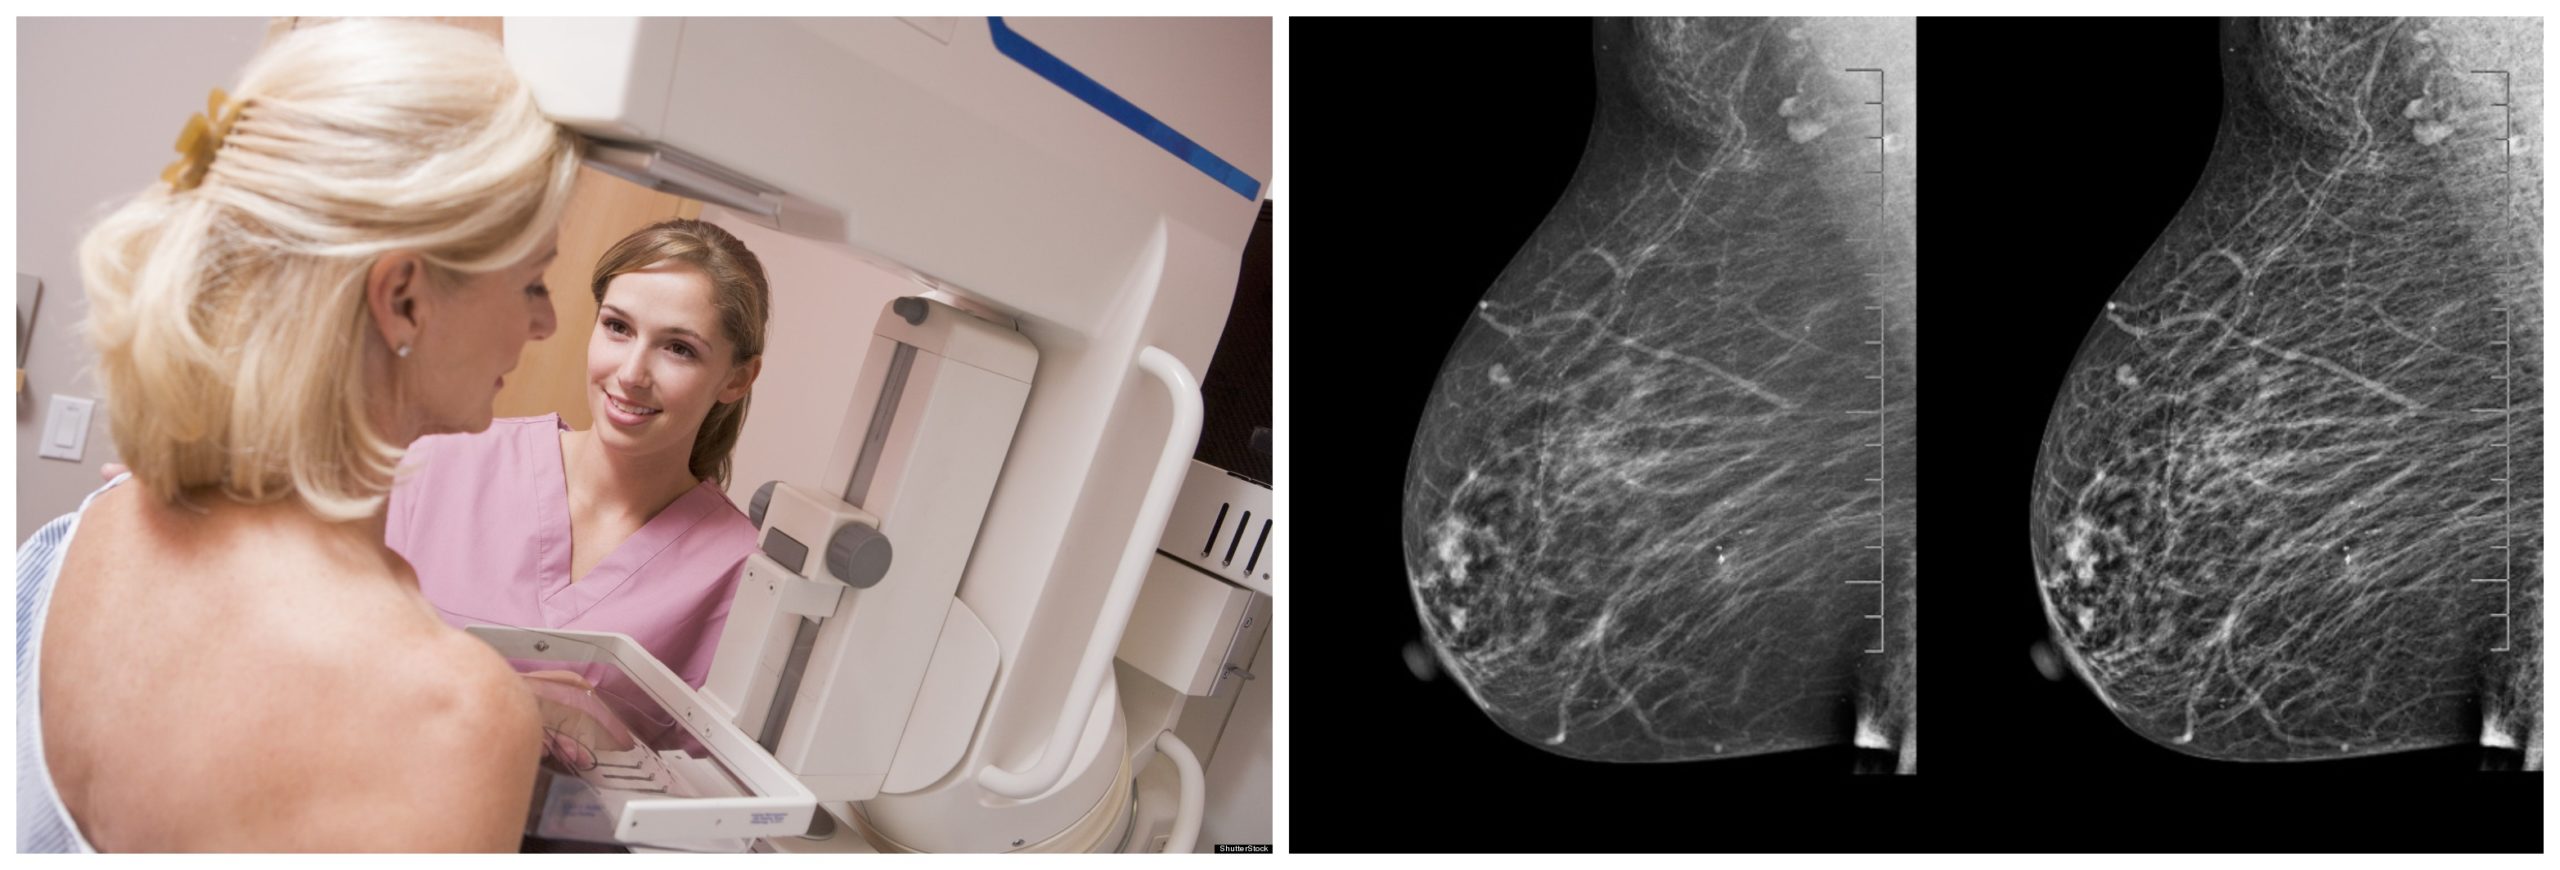 как делают маммографию груди у женщин фото 30